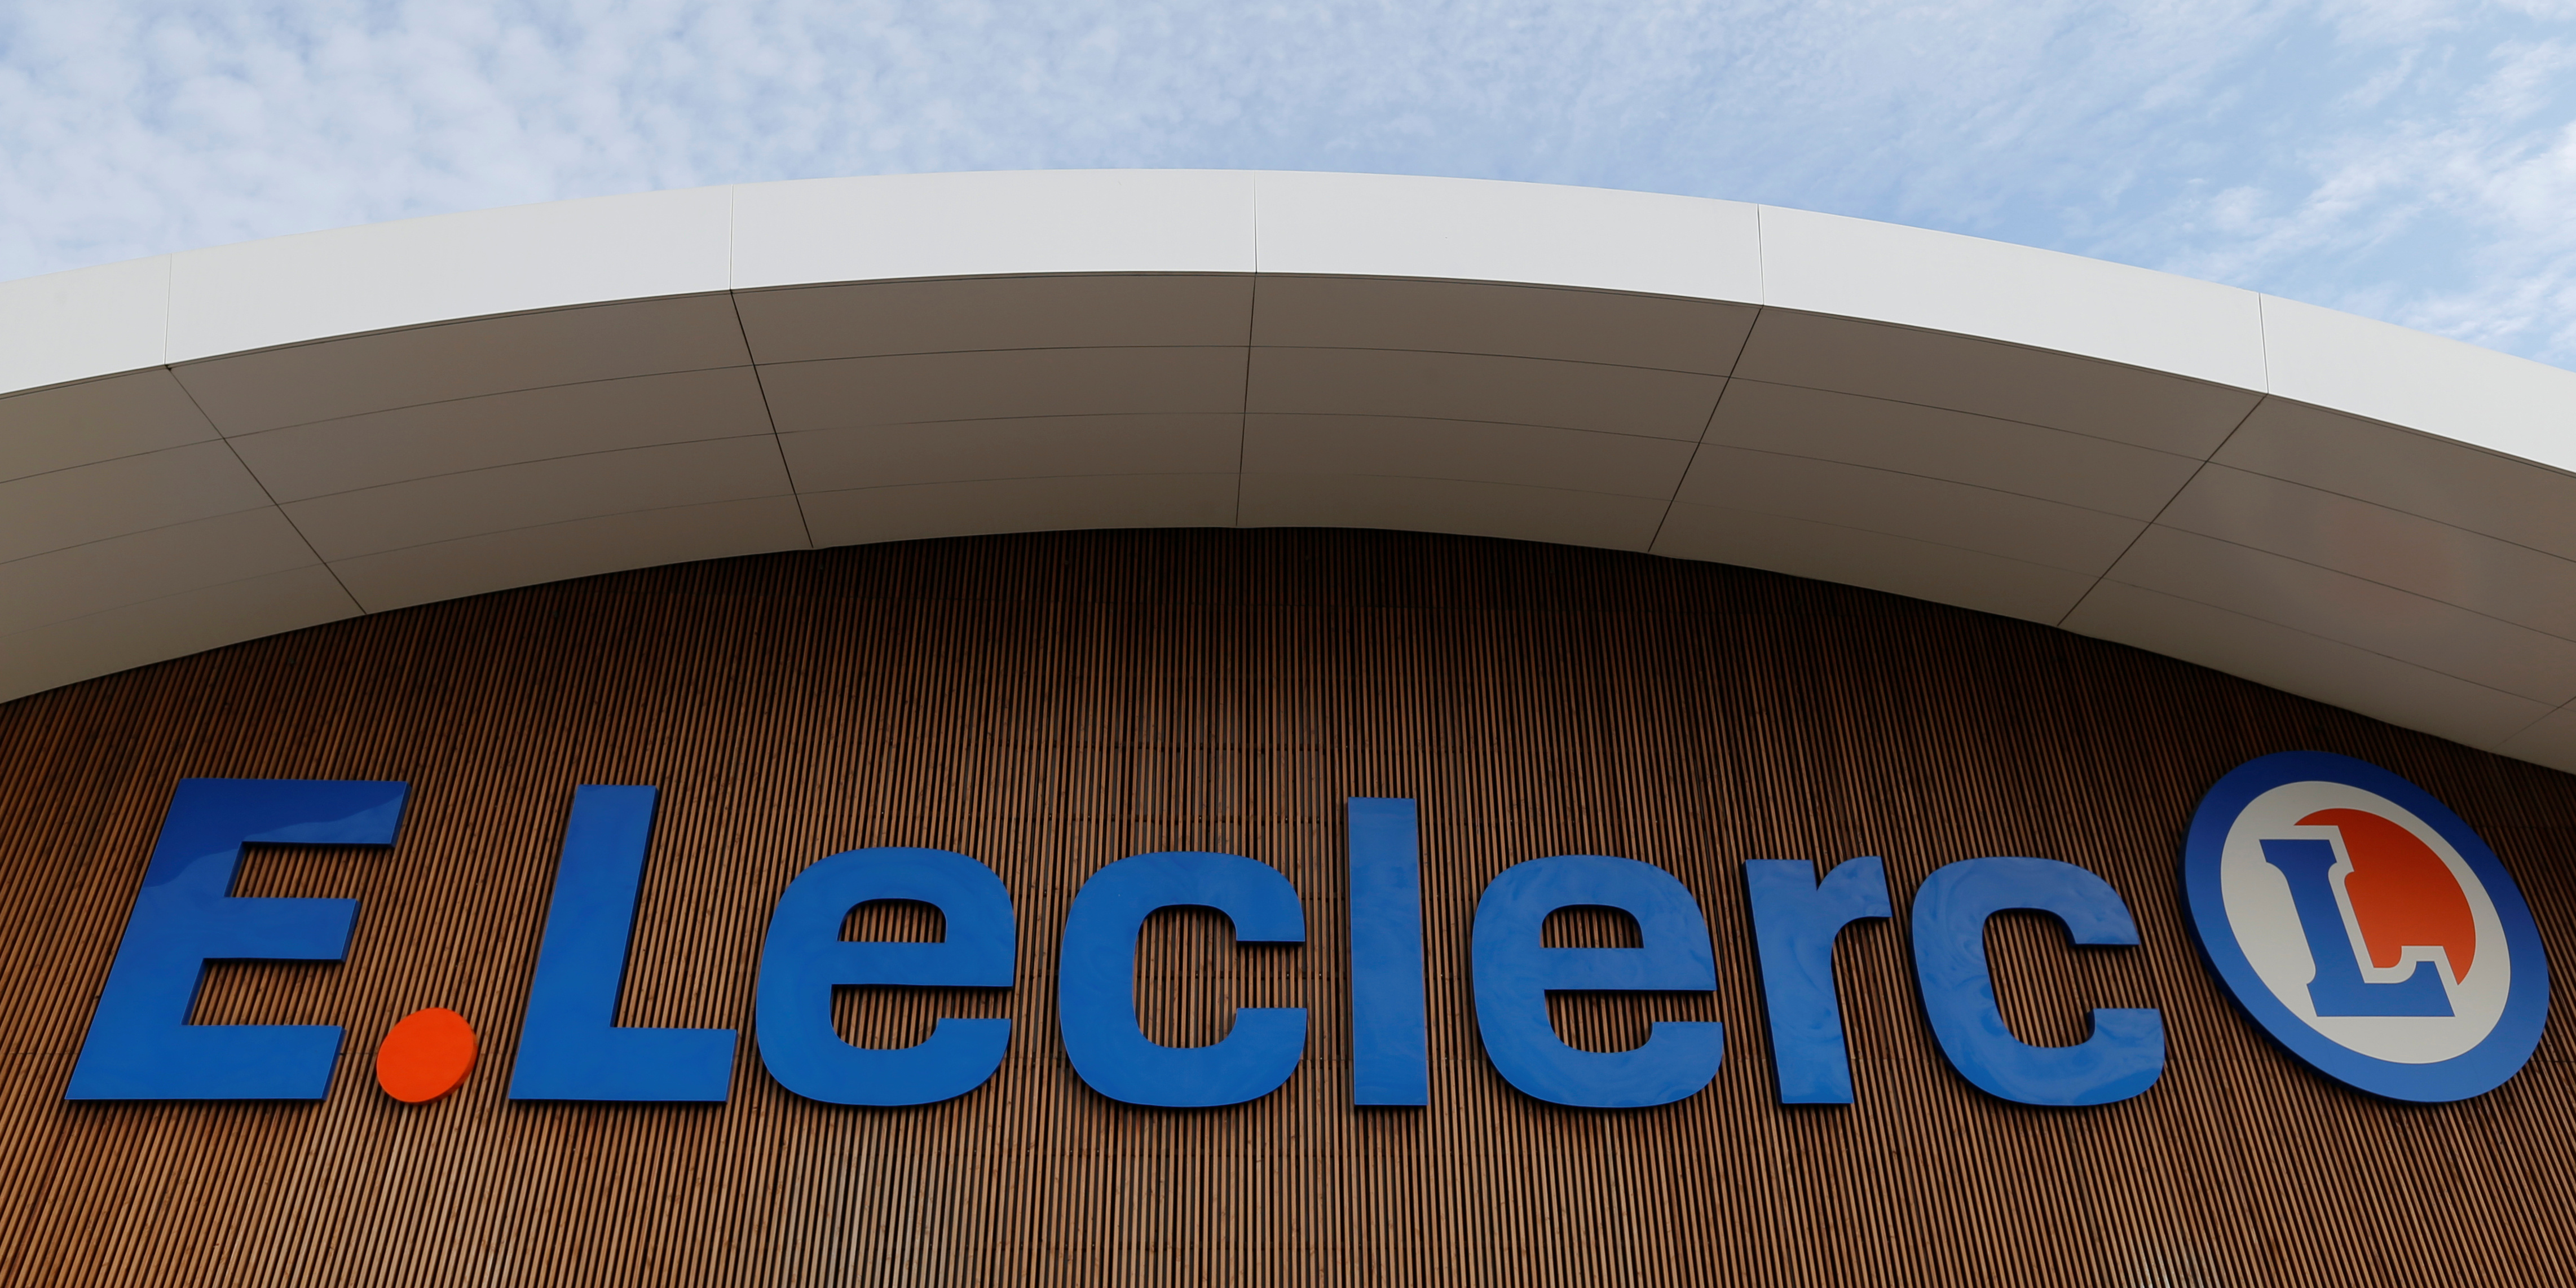 La justice française est compétente pour juger le litige entre la centrale d'achat de Leclerc et Bercy, selon la cour d'appel